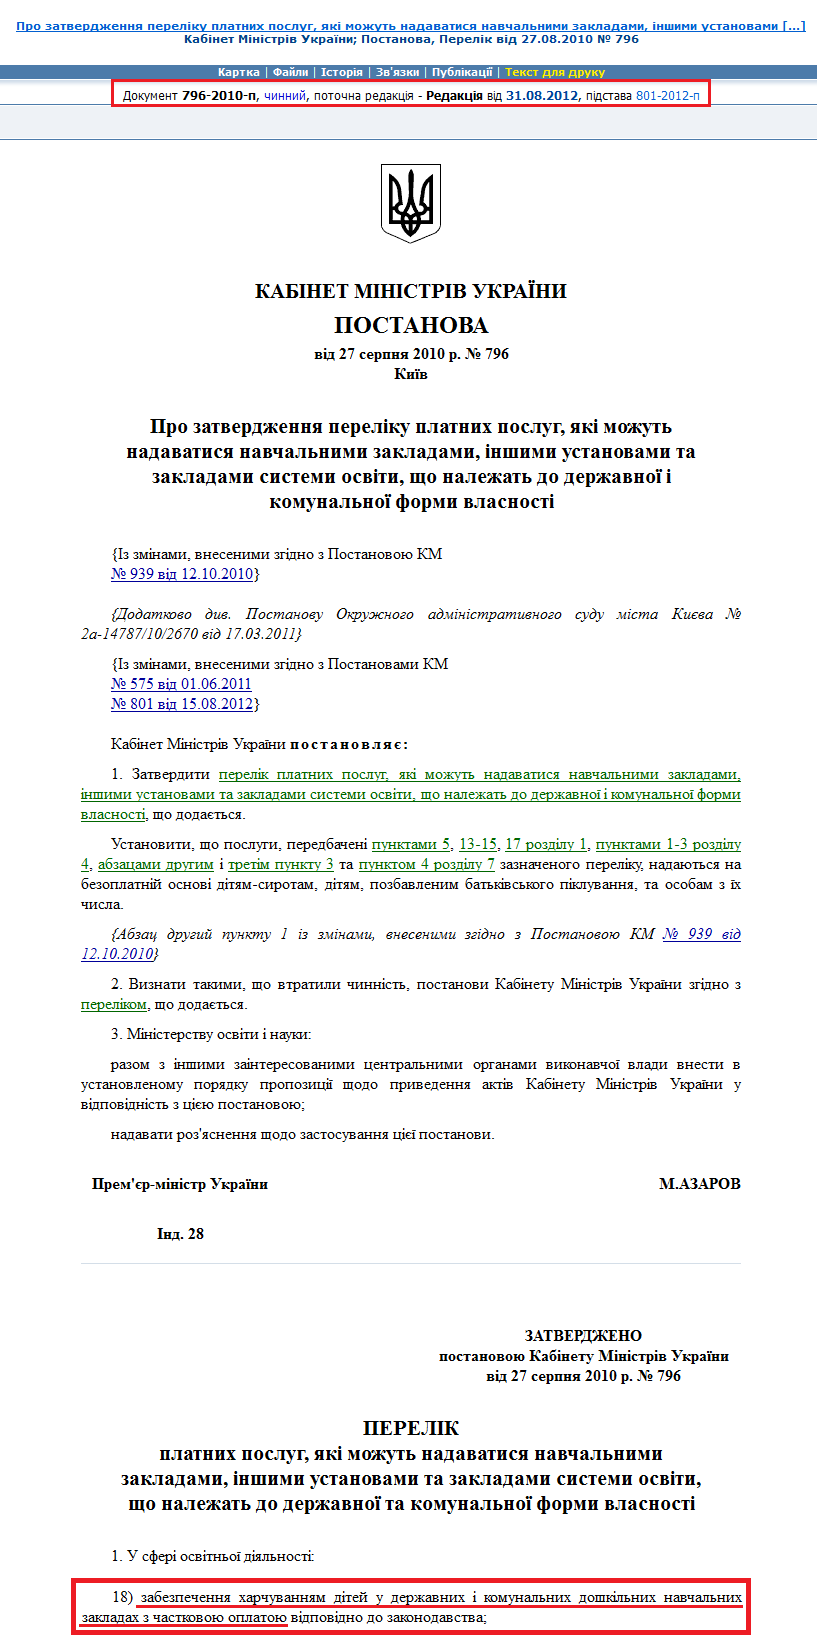 http://zakon2.rada.gov.ua/laws/show/796-2010-%D0%BF